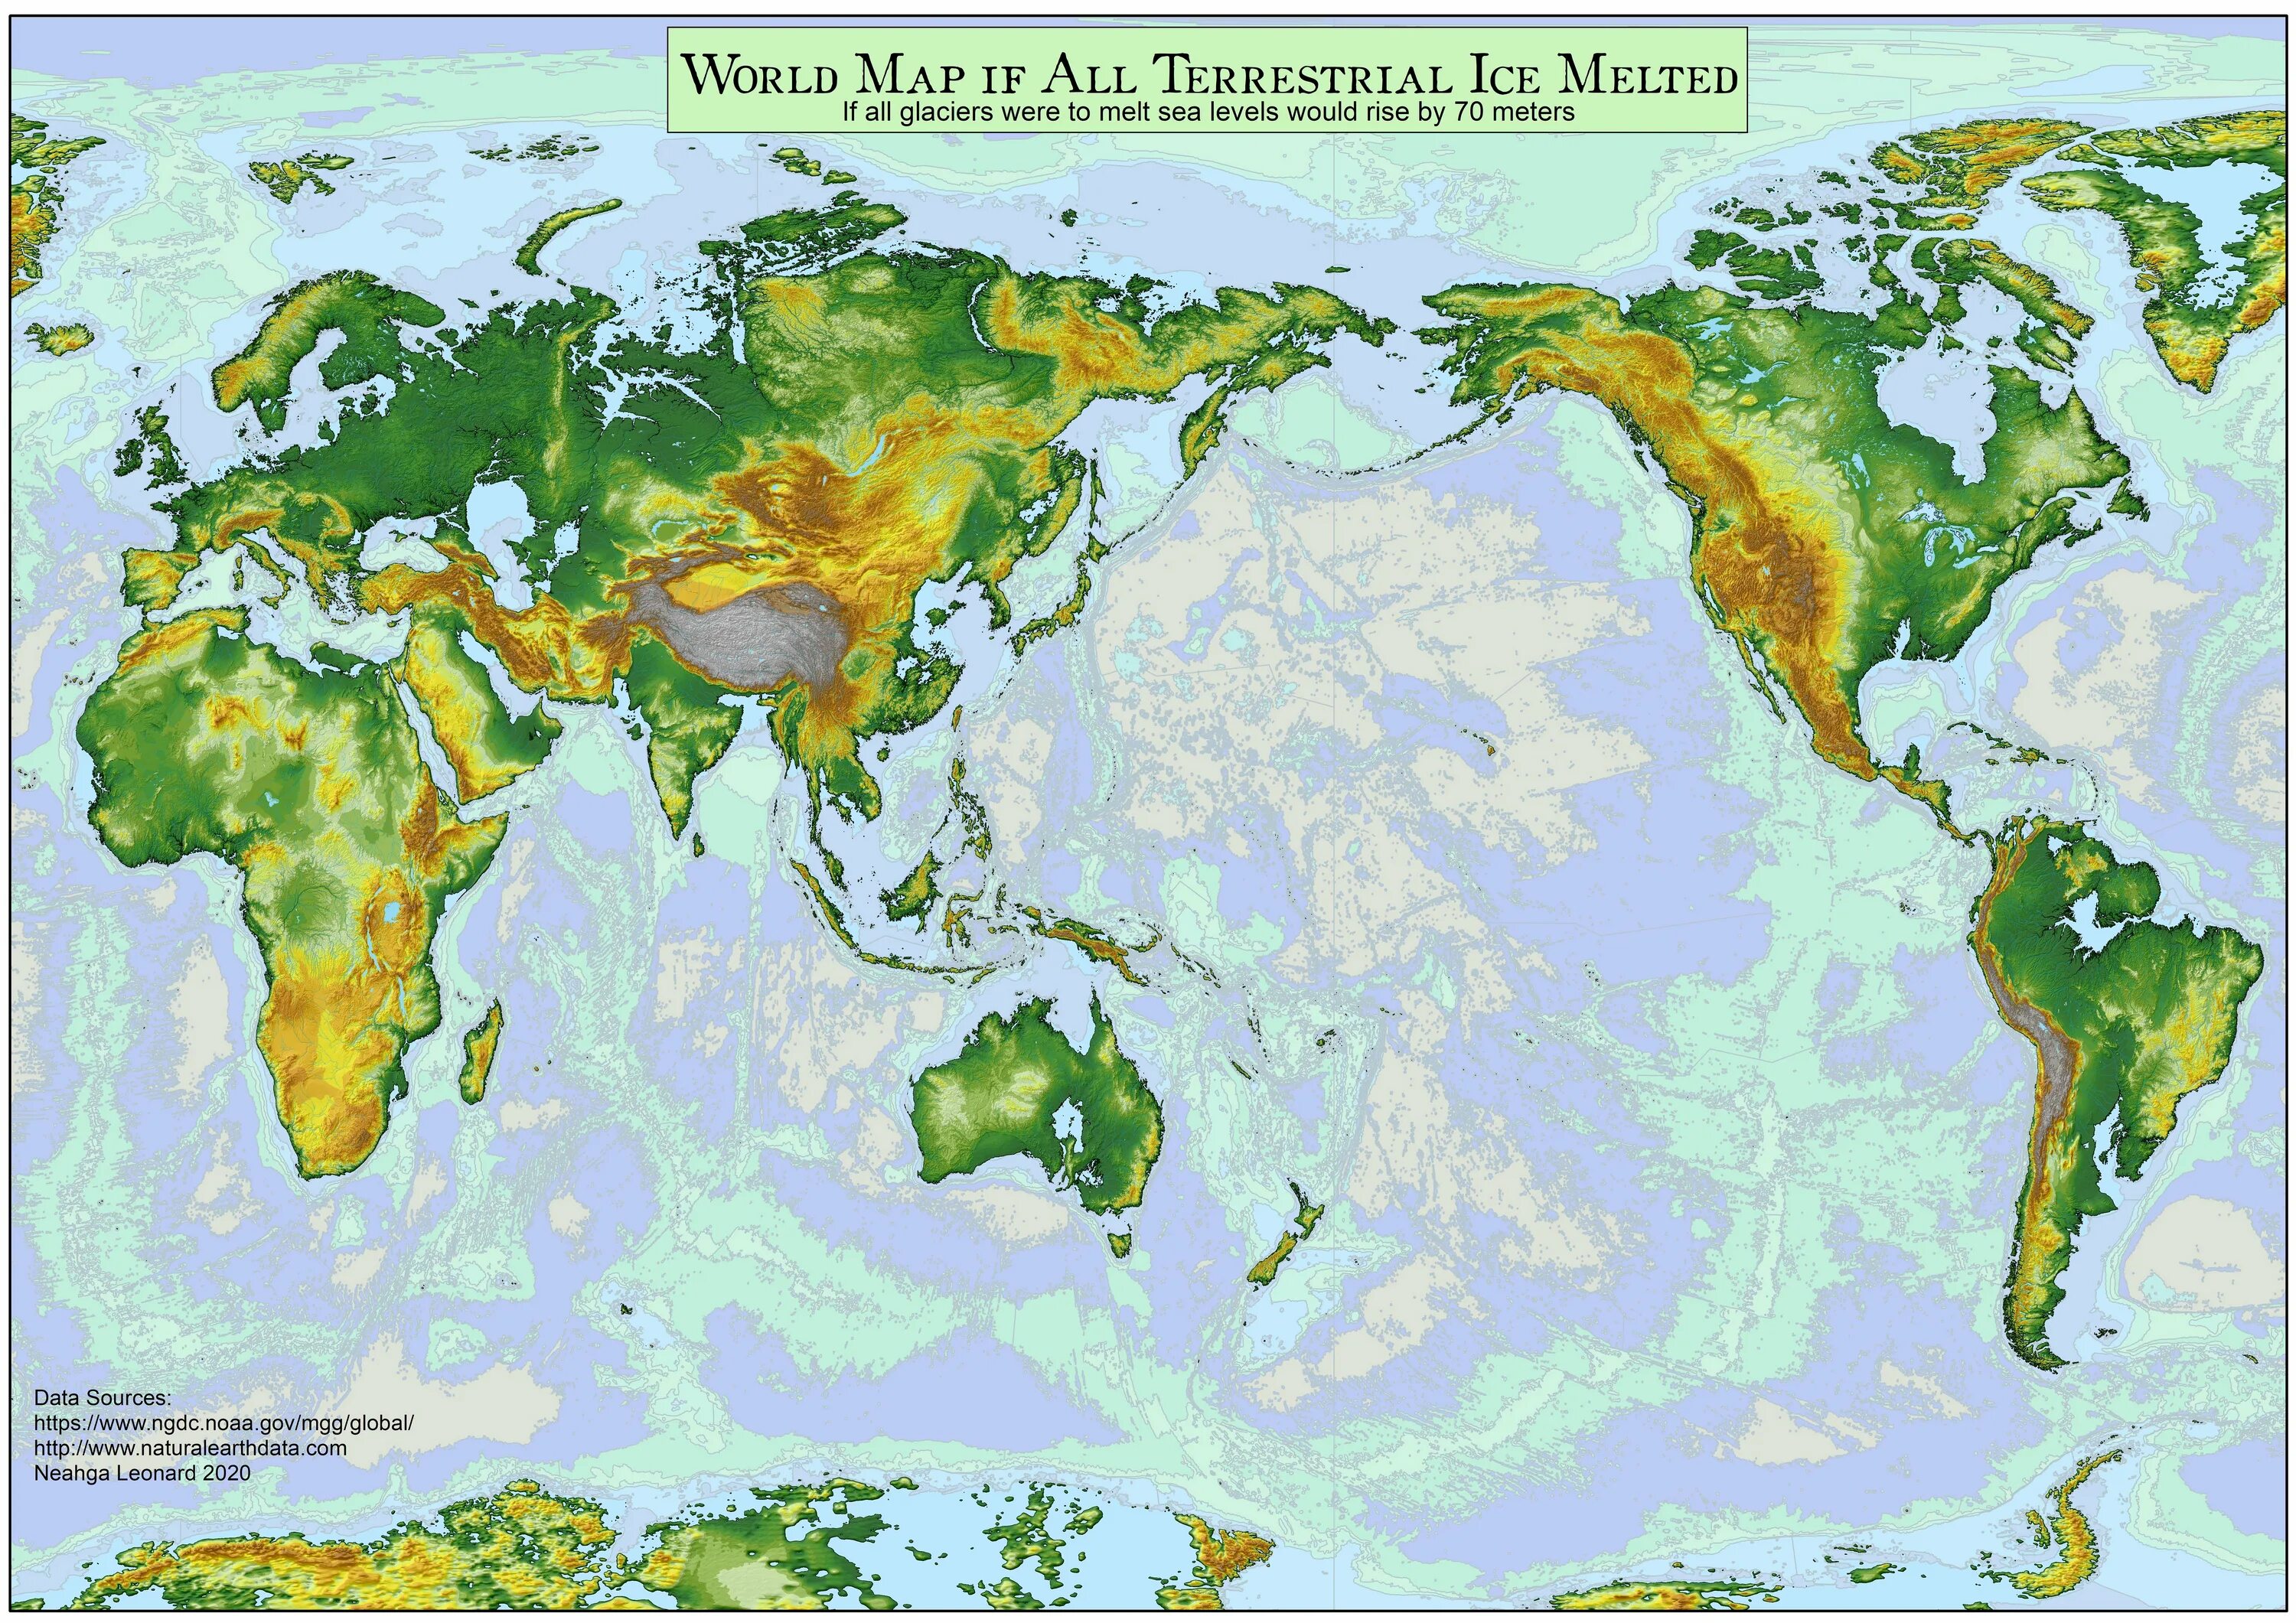 Уровень мирового океана был. Карта земли при повышении уровня мирового океана на 70 метров. Карта при глобальном потеплении. Увеличение уровня мирового океана.